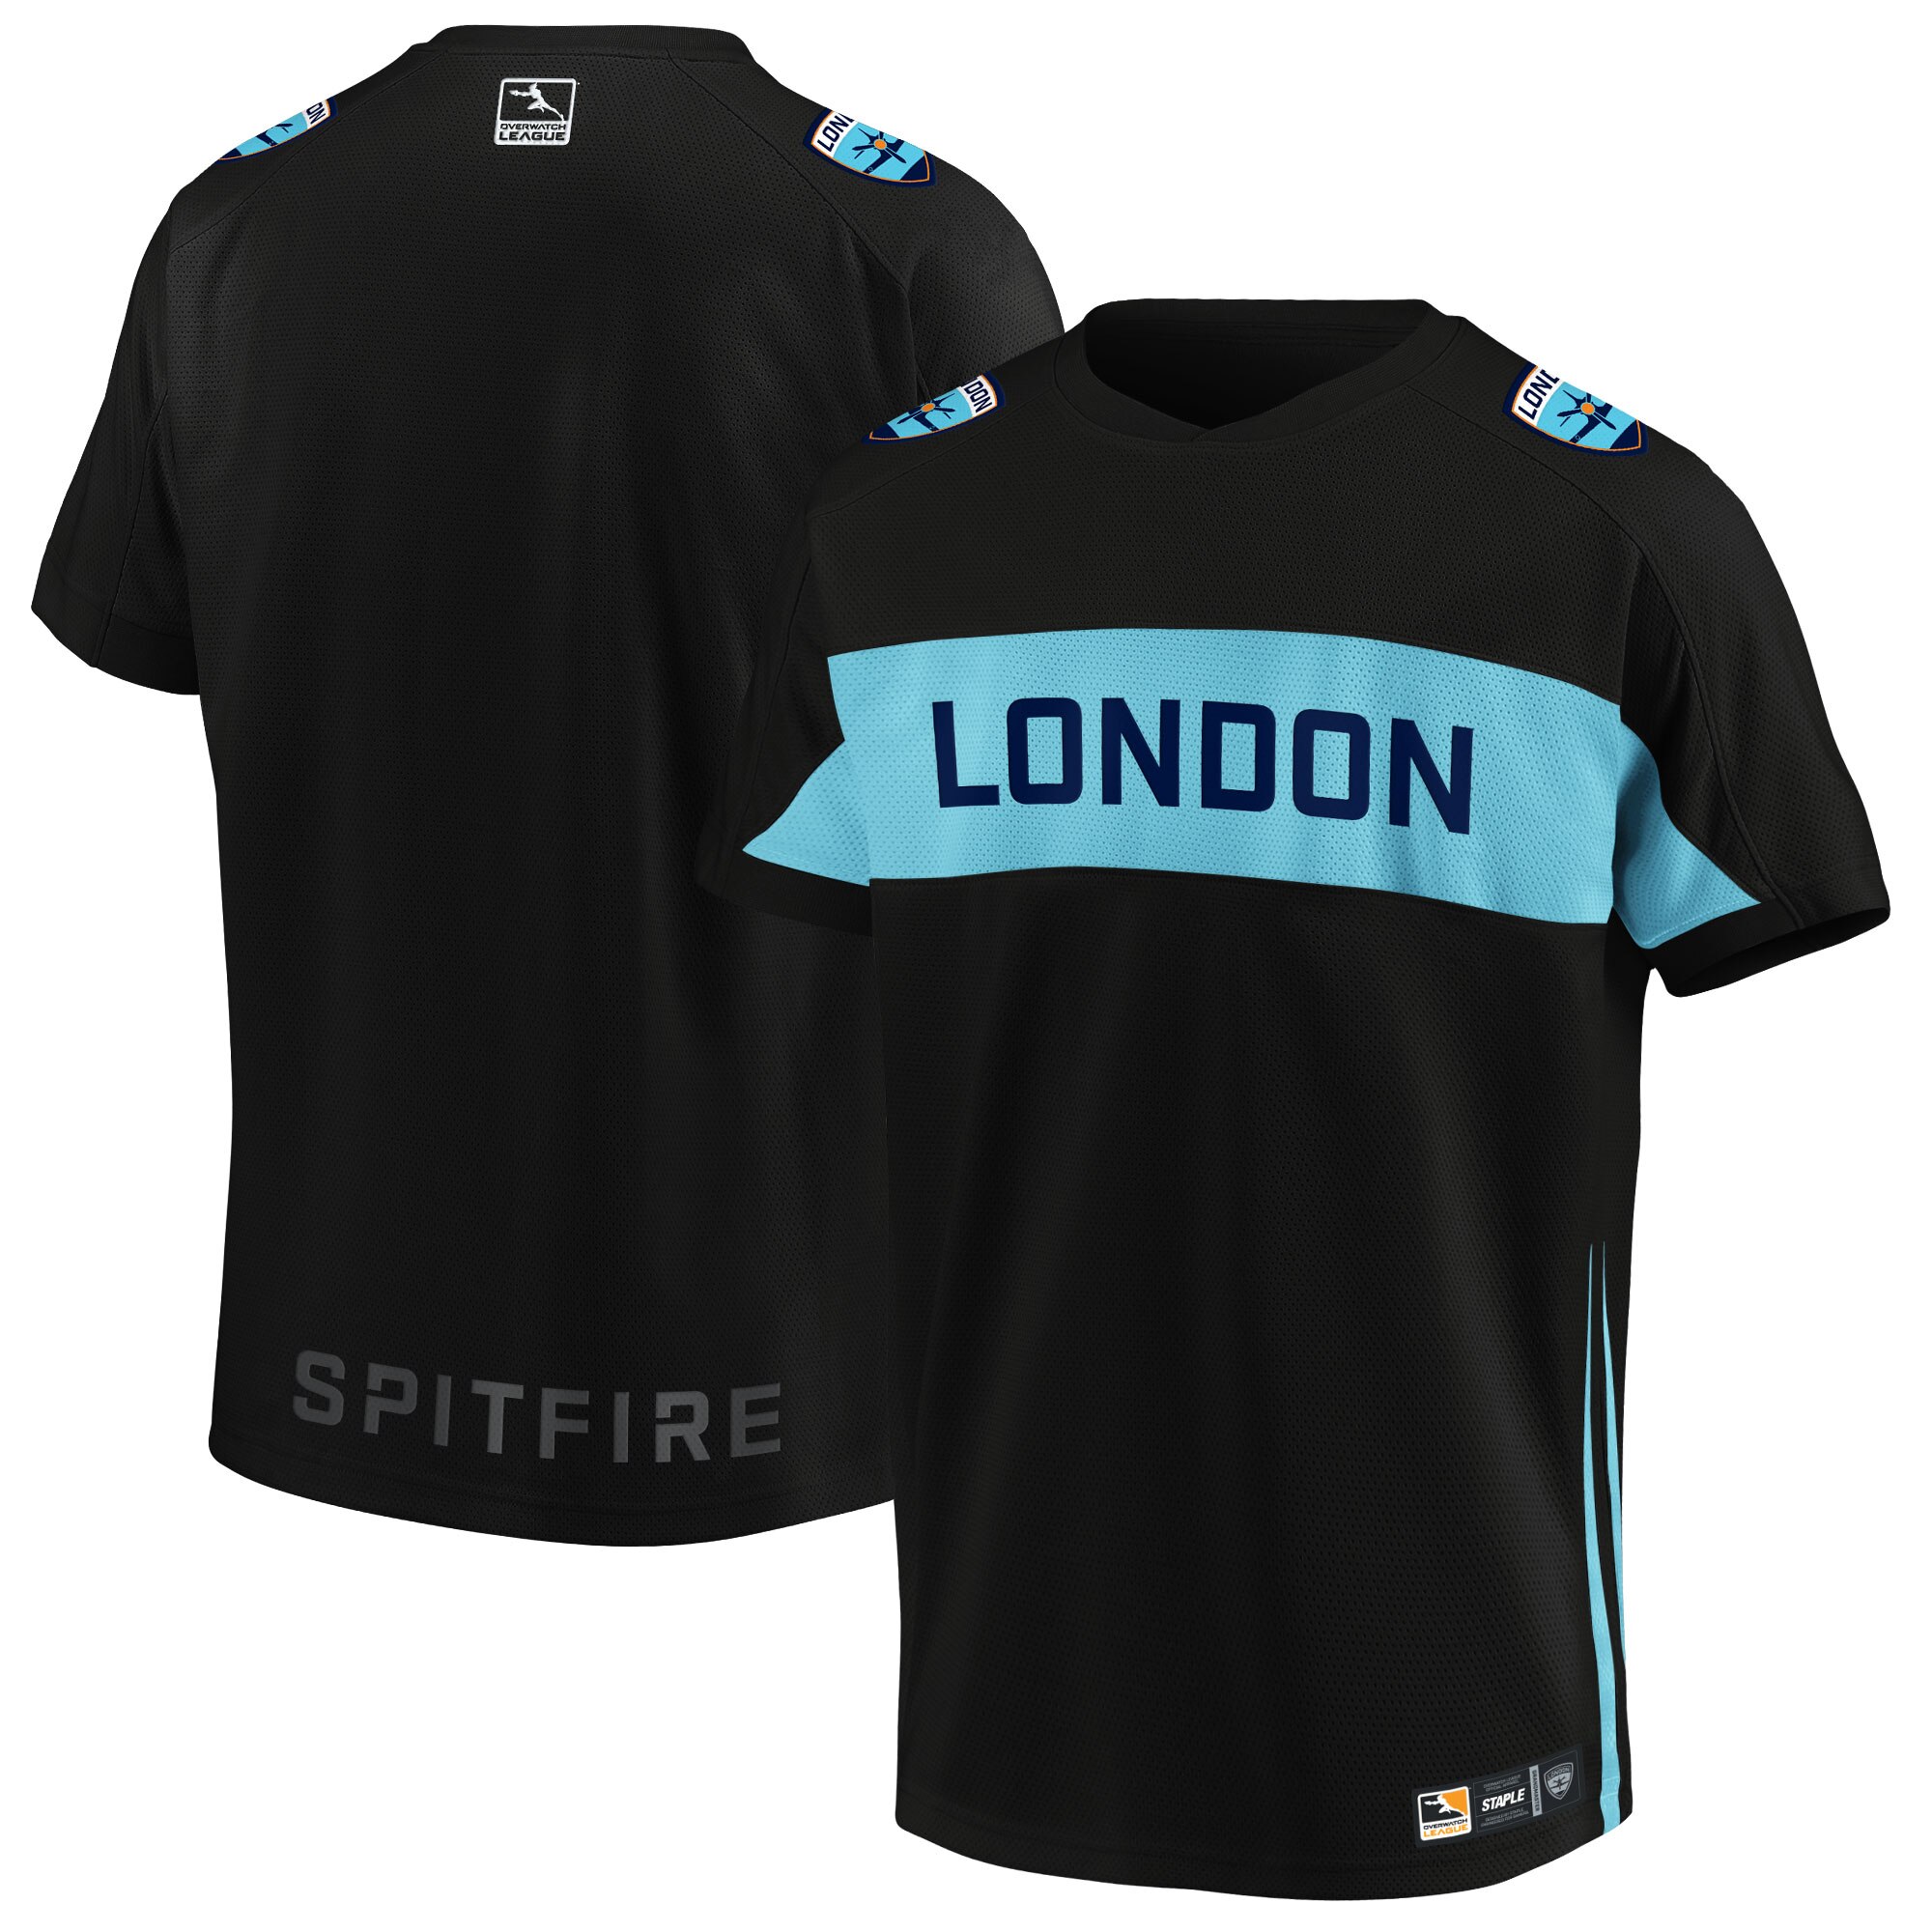 london spitfire jersey uk